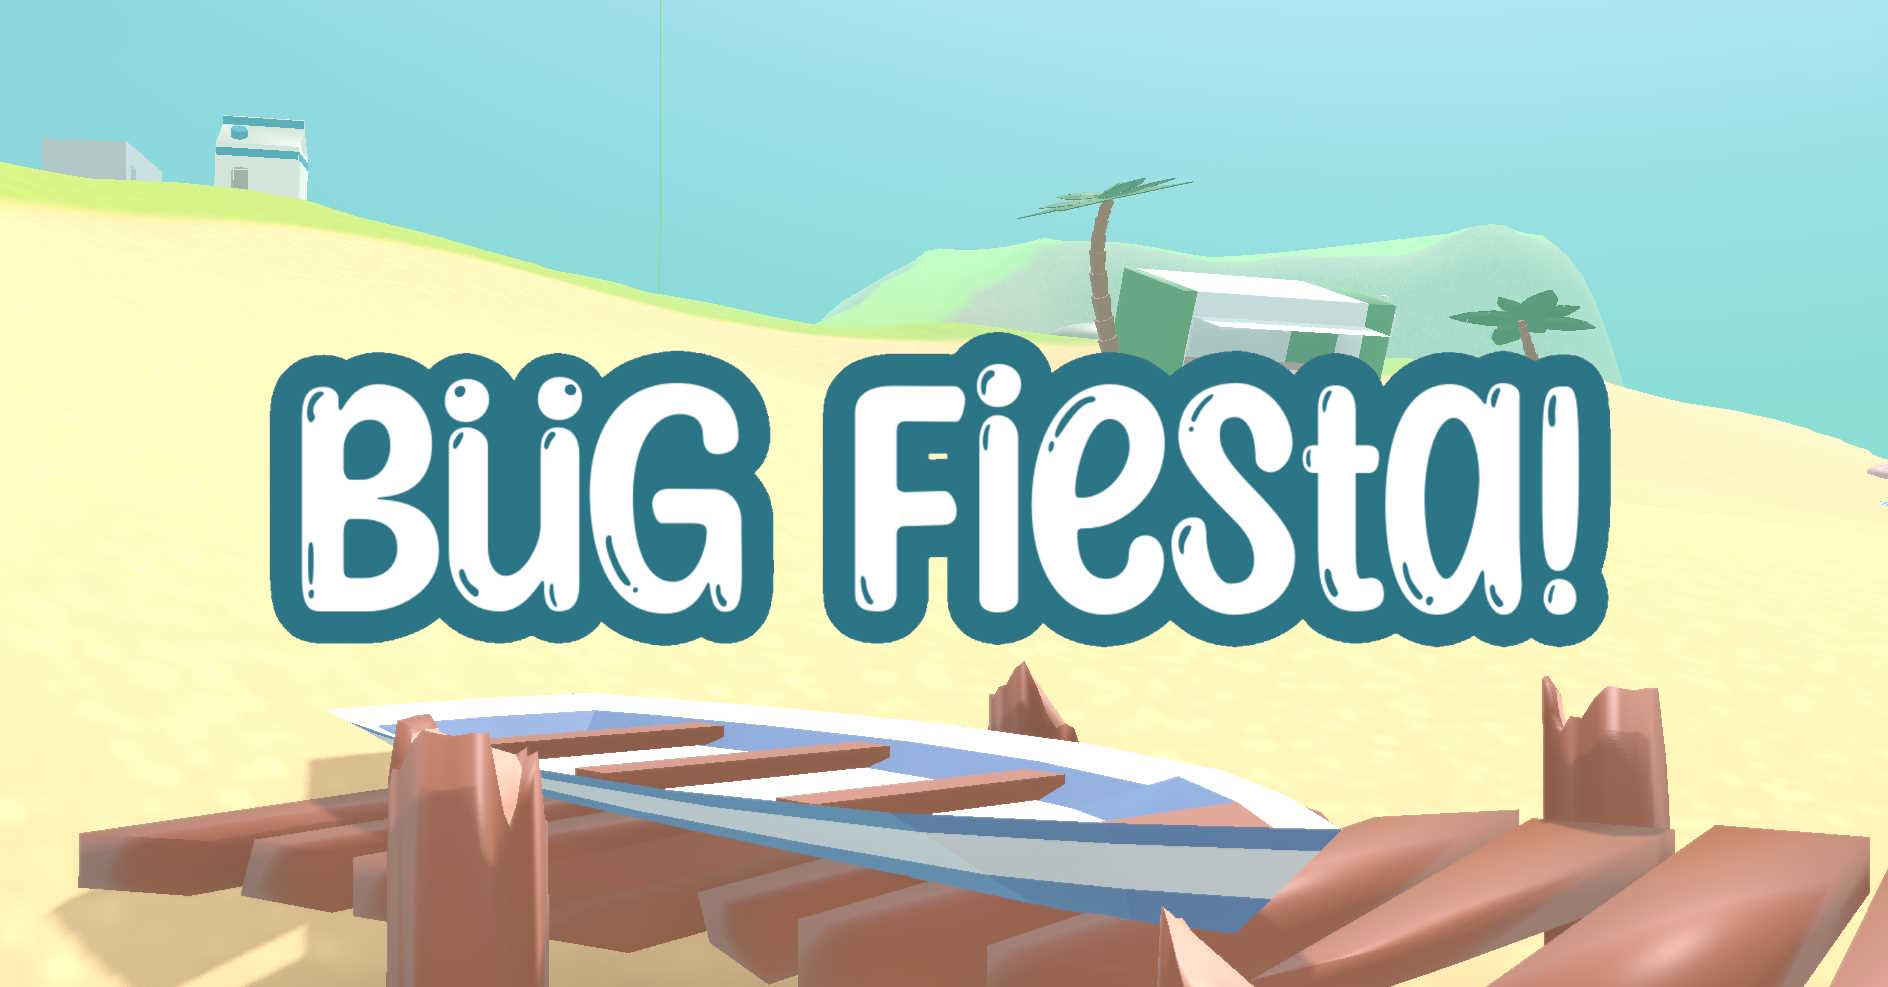 PresentaciÃ³n del videojuego Bug Fiesta!, con un fondo donde se aprecia una playa con un puerto y una barca encima, unas dunas de arena, un chiringuito y unos pequeÃ±os edificios con forma de brick de leche al fondo.